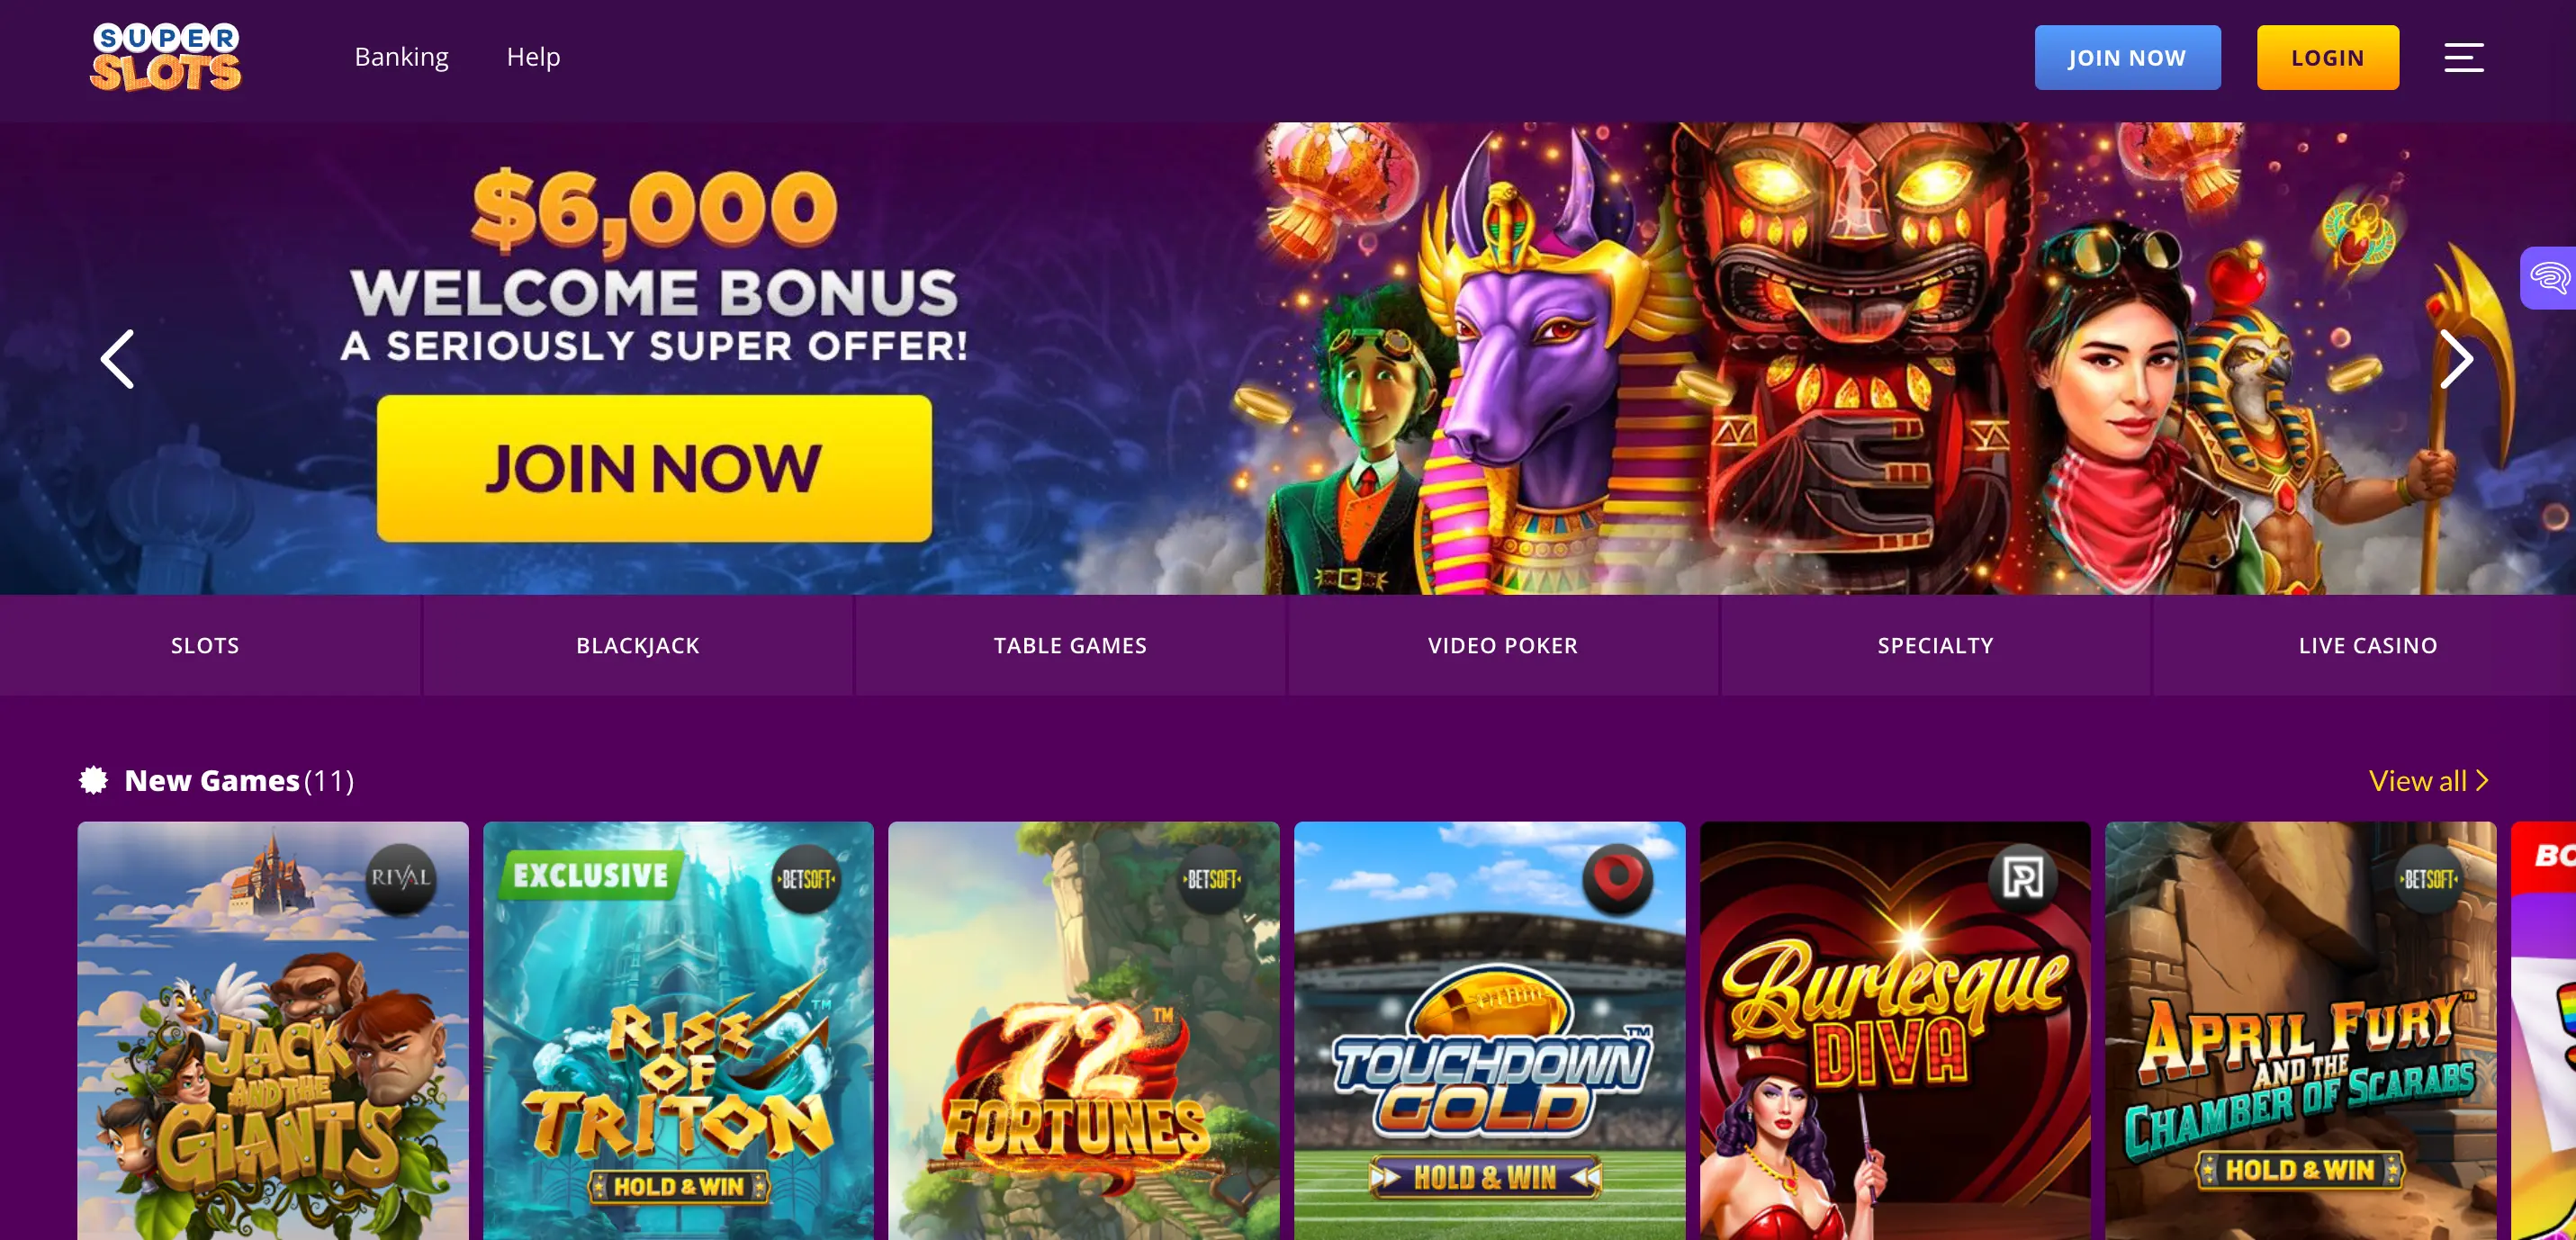 Super Slots Online Casino Bonus